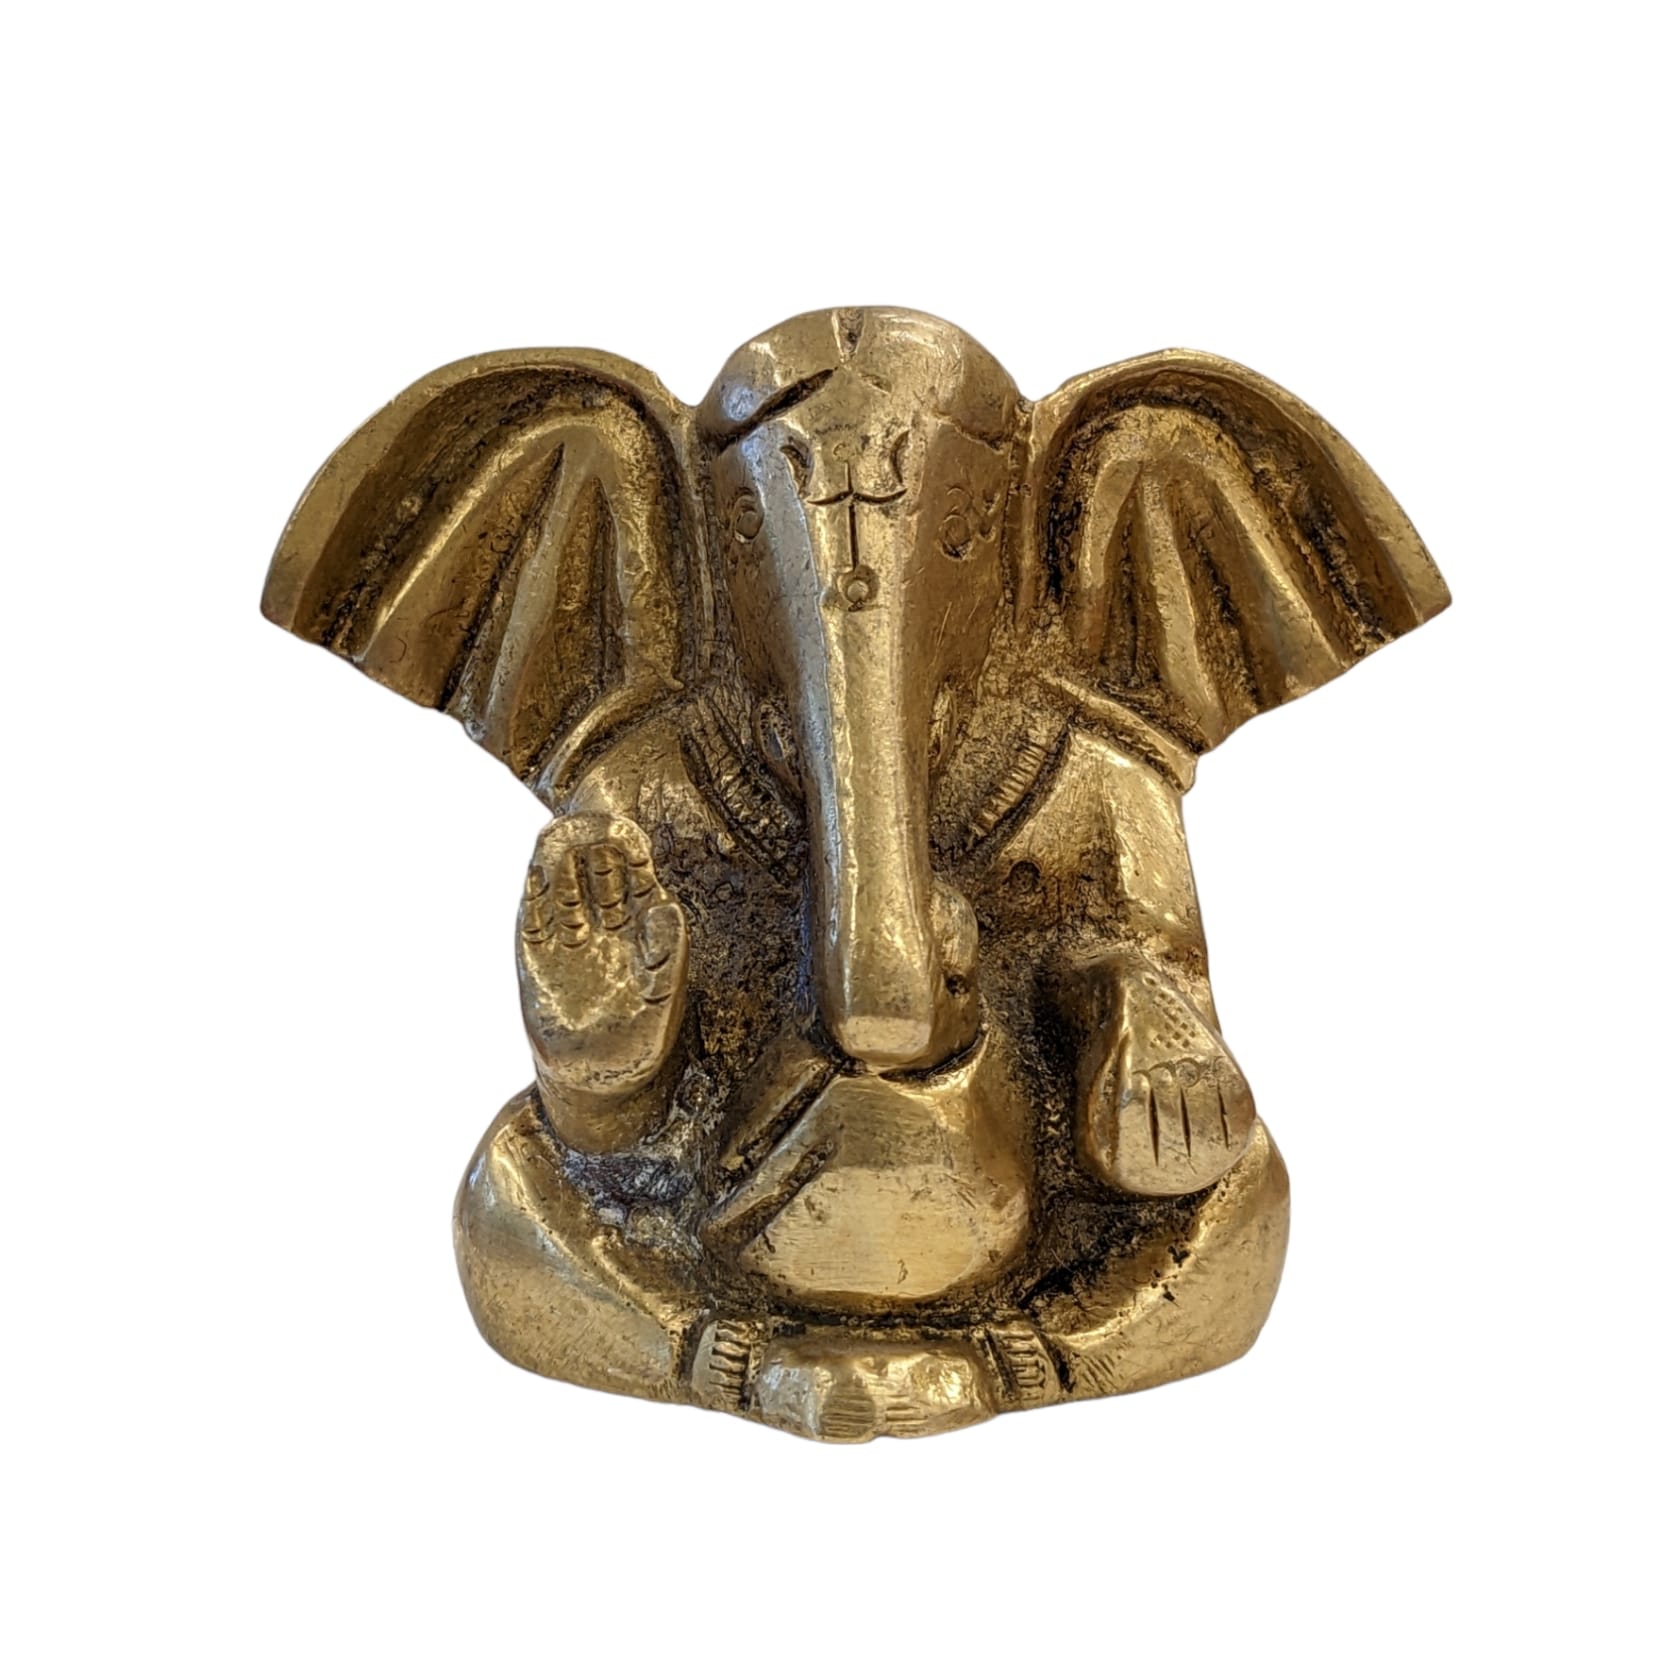 Image of a Brass Car Dashboard Idol of Ganesha